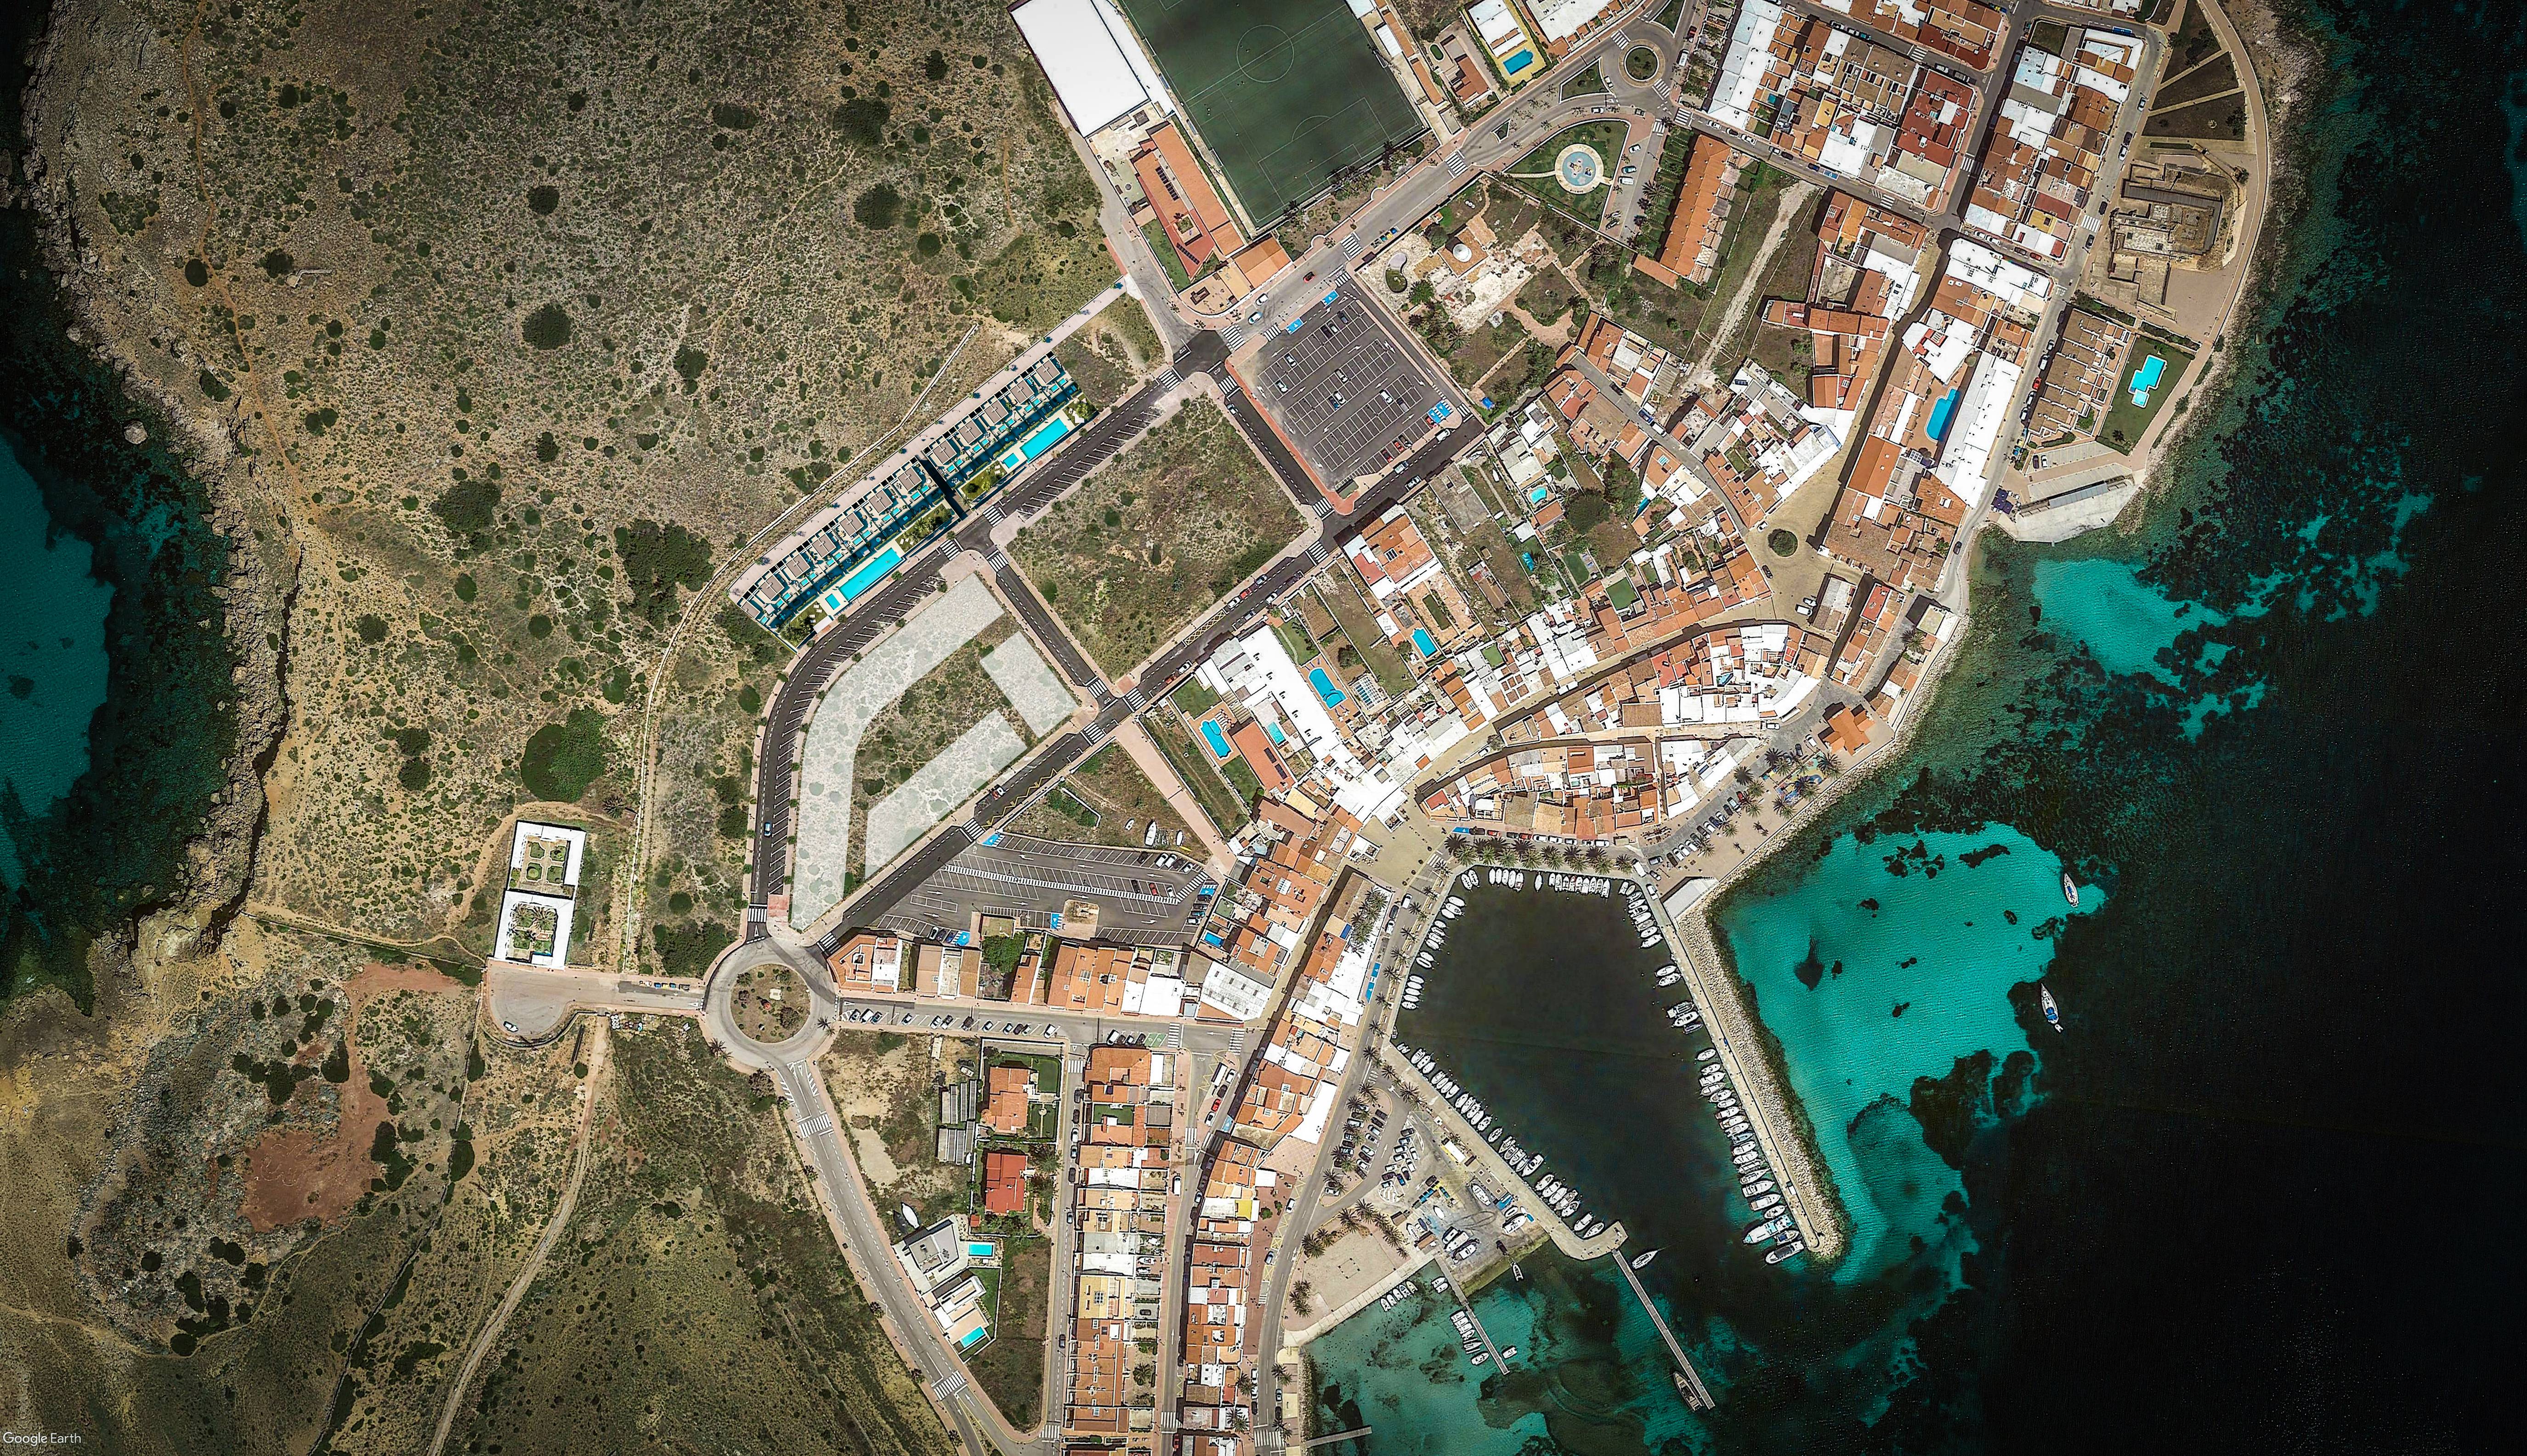 Promoción - ¡Obras iniciadas! Exclusiva promoción residencial en la bahía de Fornells, Menorca